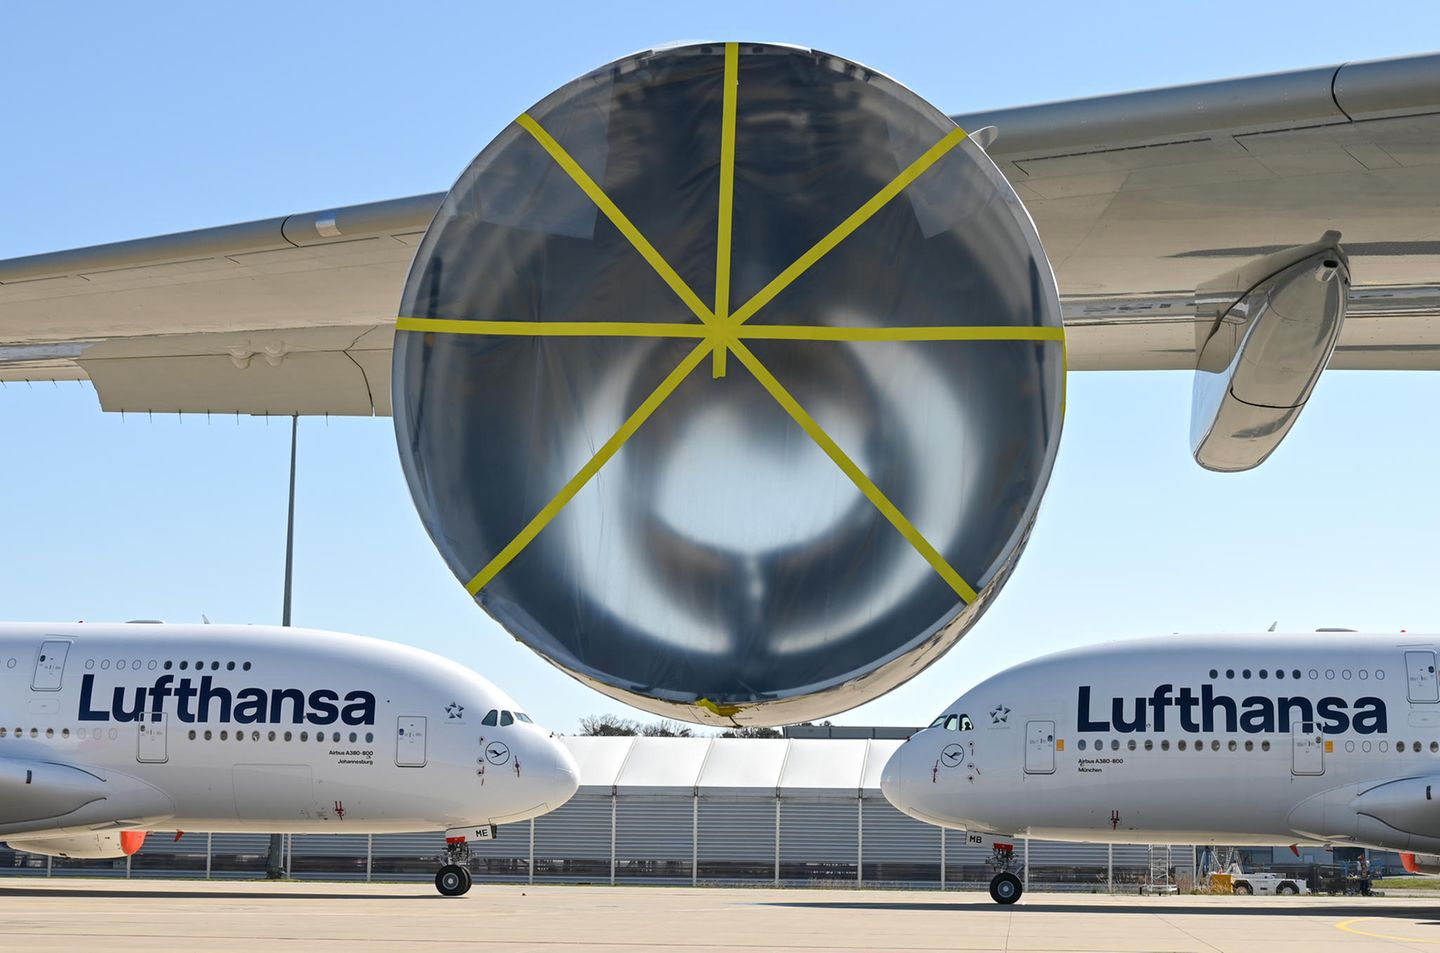 Zwei Airbus A380 der Lufthansa am Boden: Die Jets stehen auf dem Gelände des Frankfurter Flughafen. Bei einer weiteren A380 ist bereits ein Triebwerk demontiert.